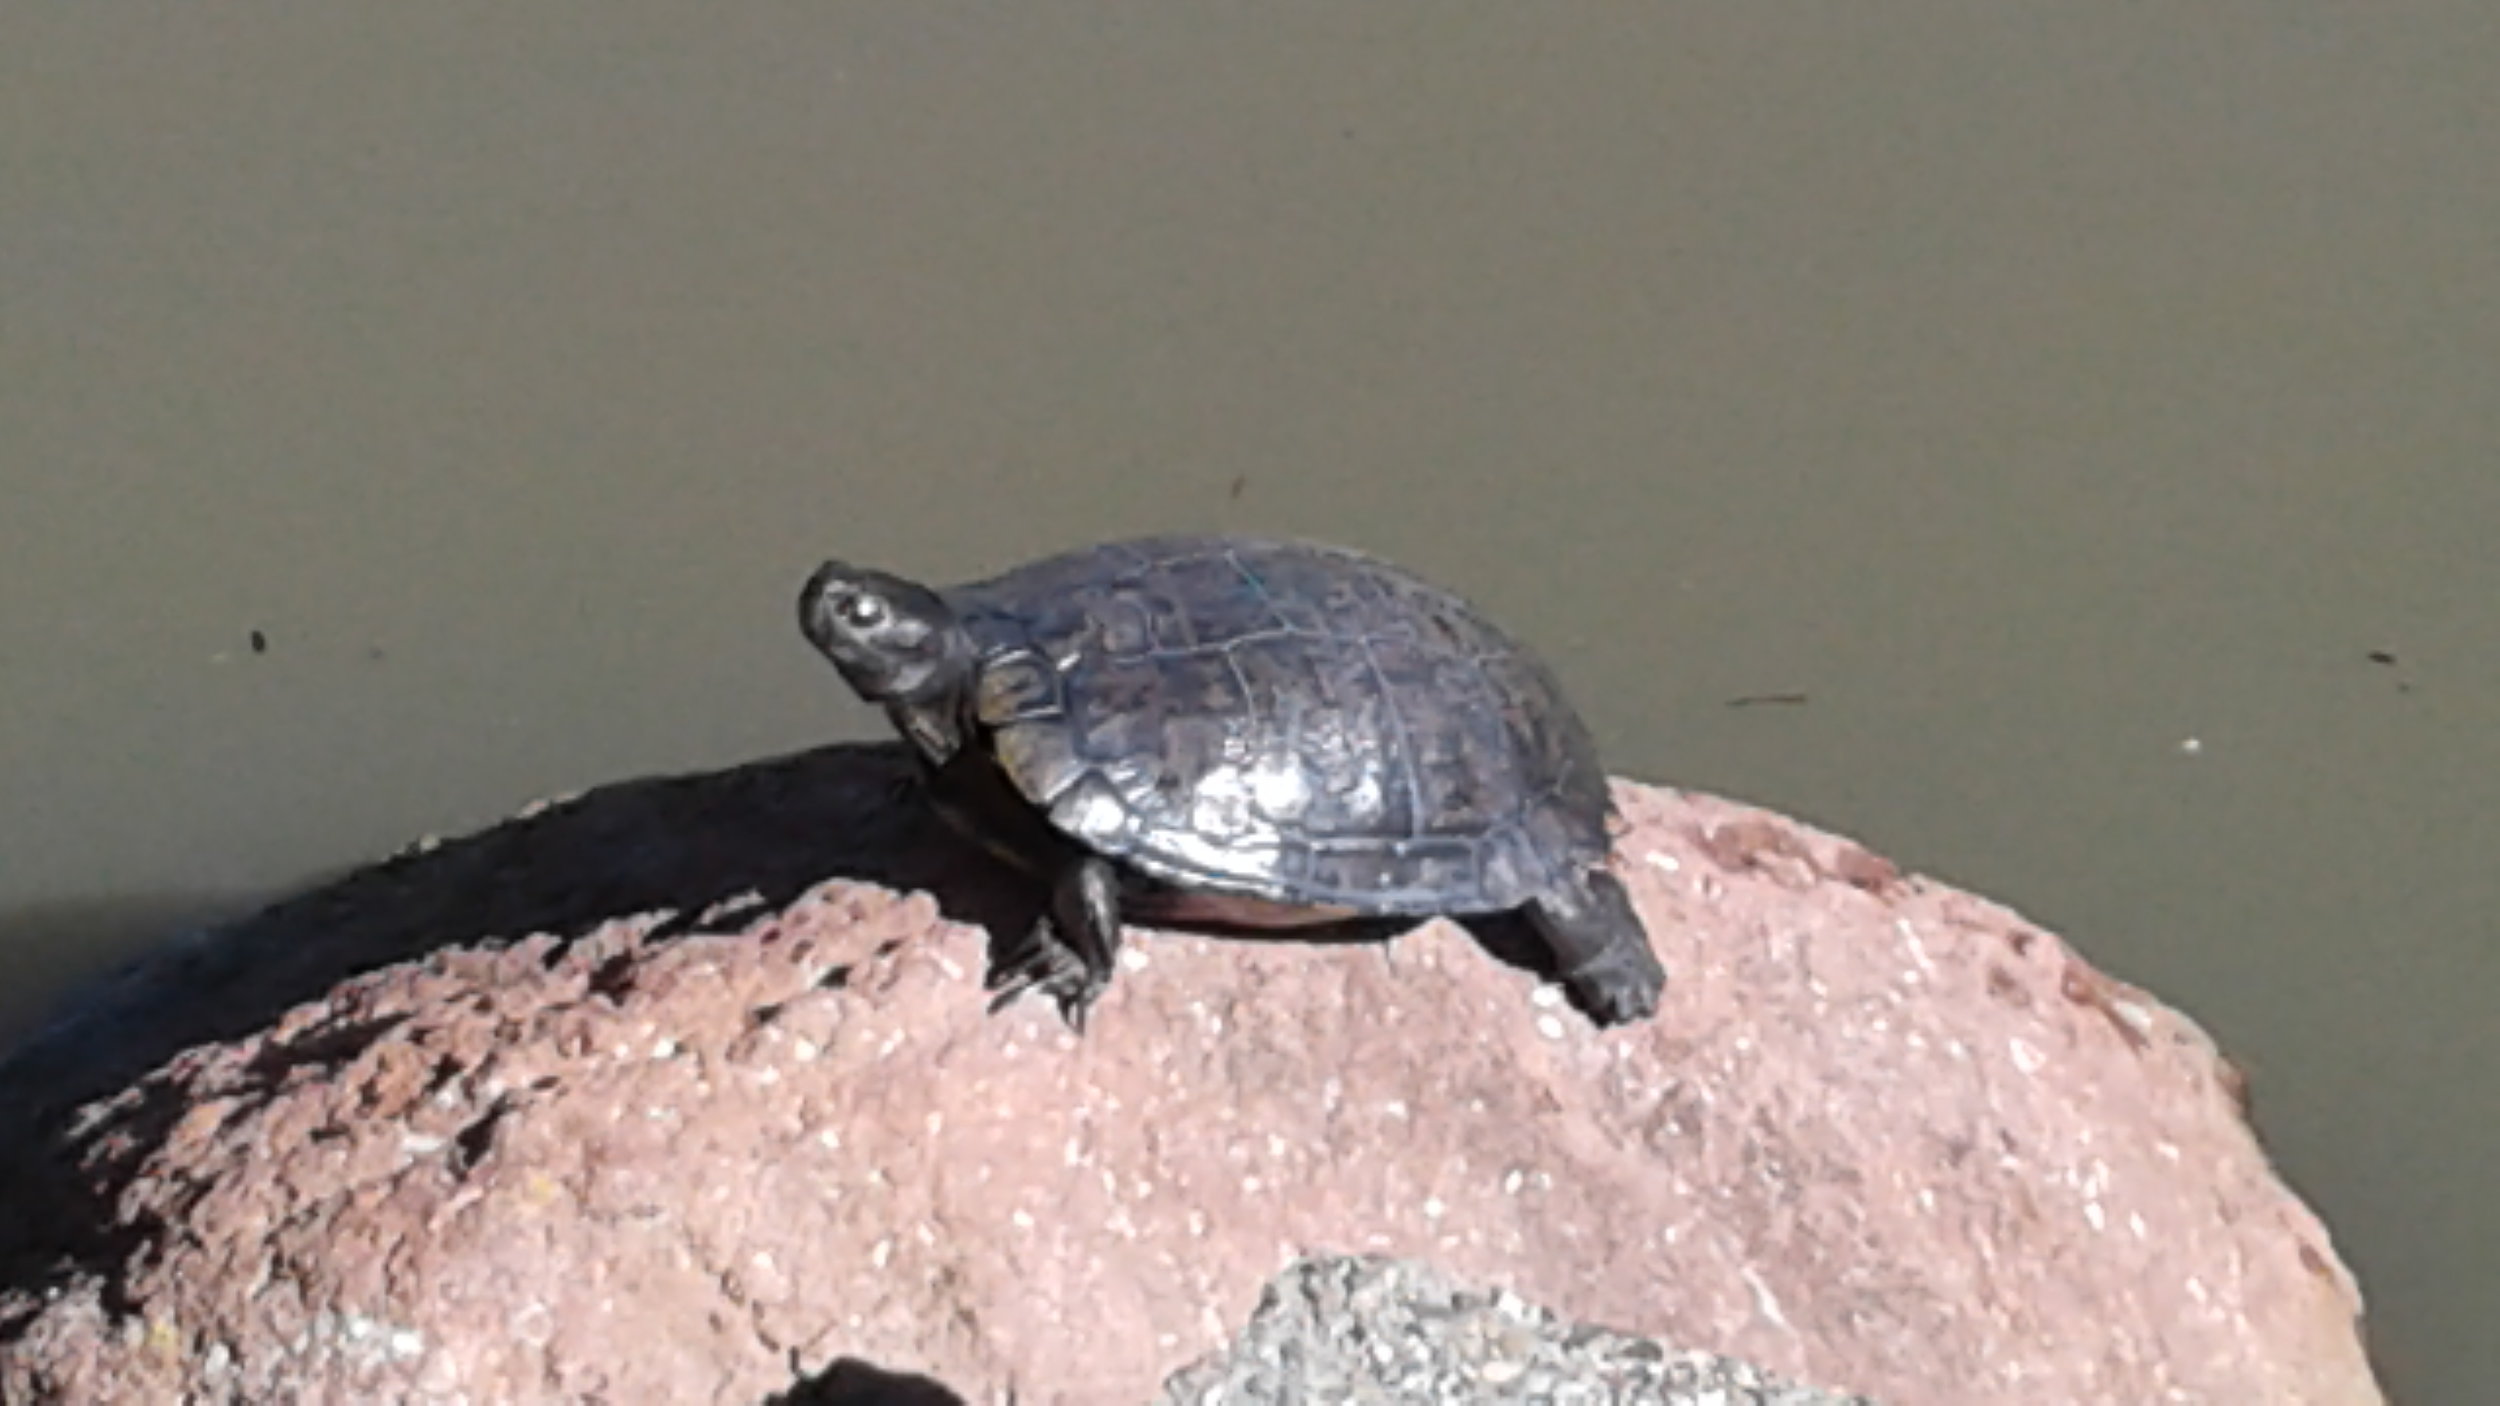 Turtle on a rock.jpg